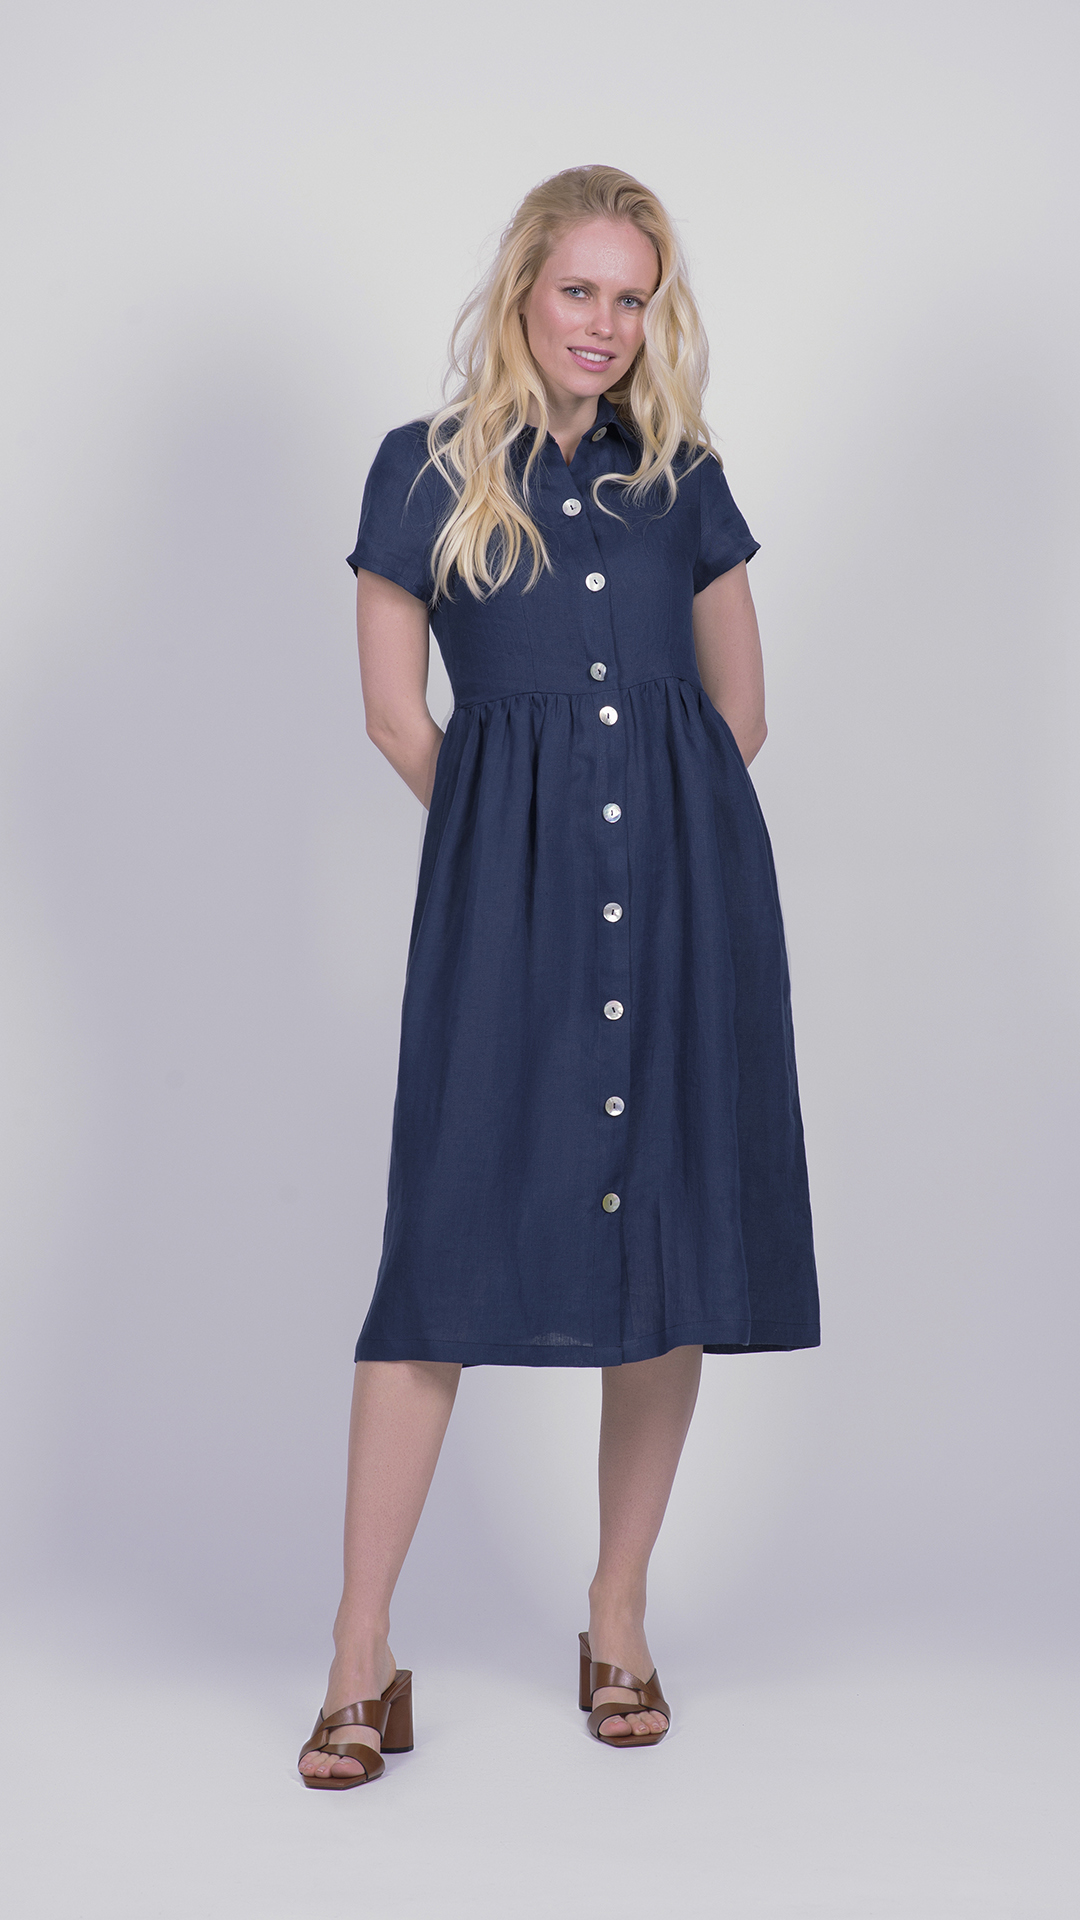 MIC 0176 1stAmerican vestito da donna con bottoni 100% lino Made in Italy - abito manica corta e elastico a vita - puro lino